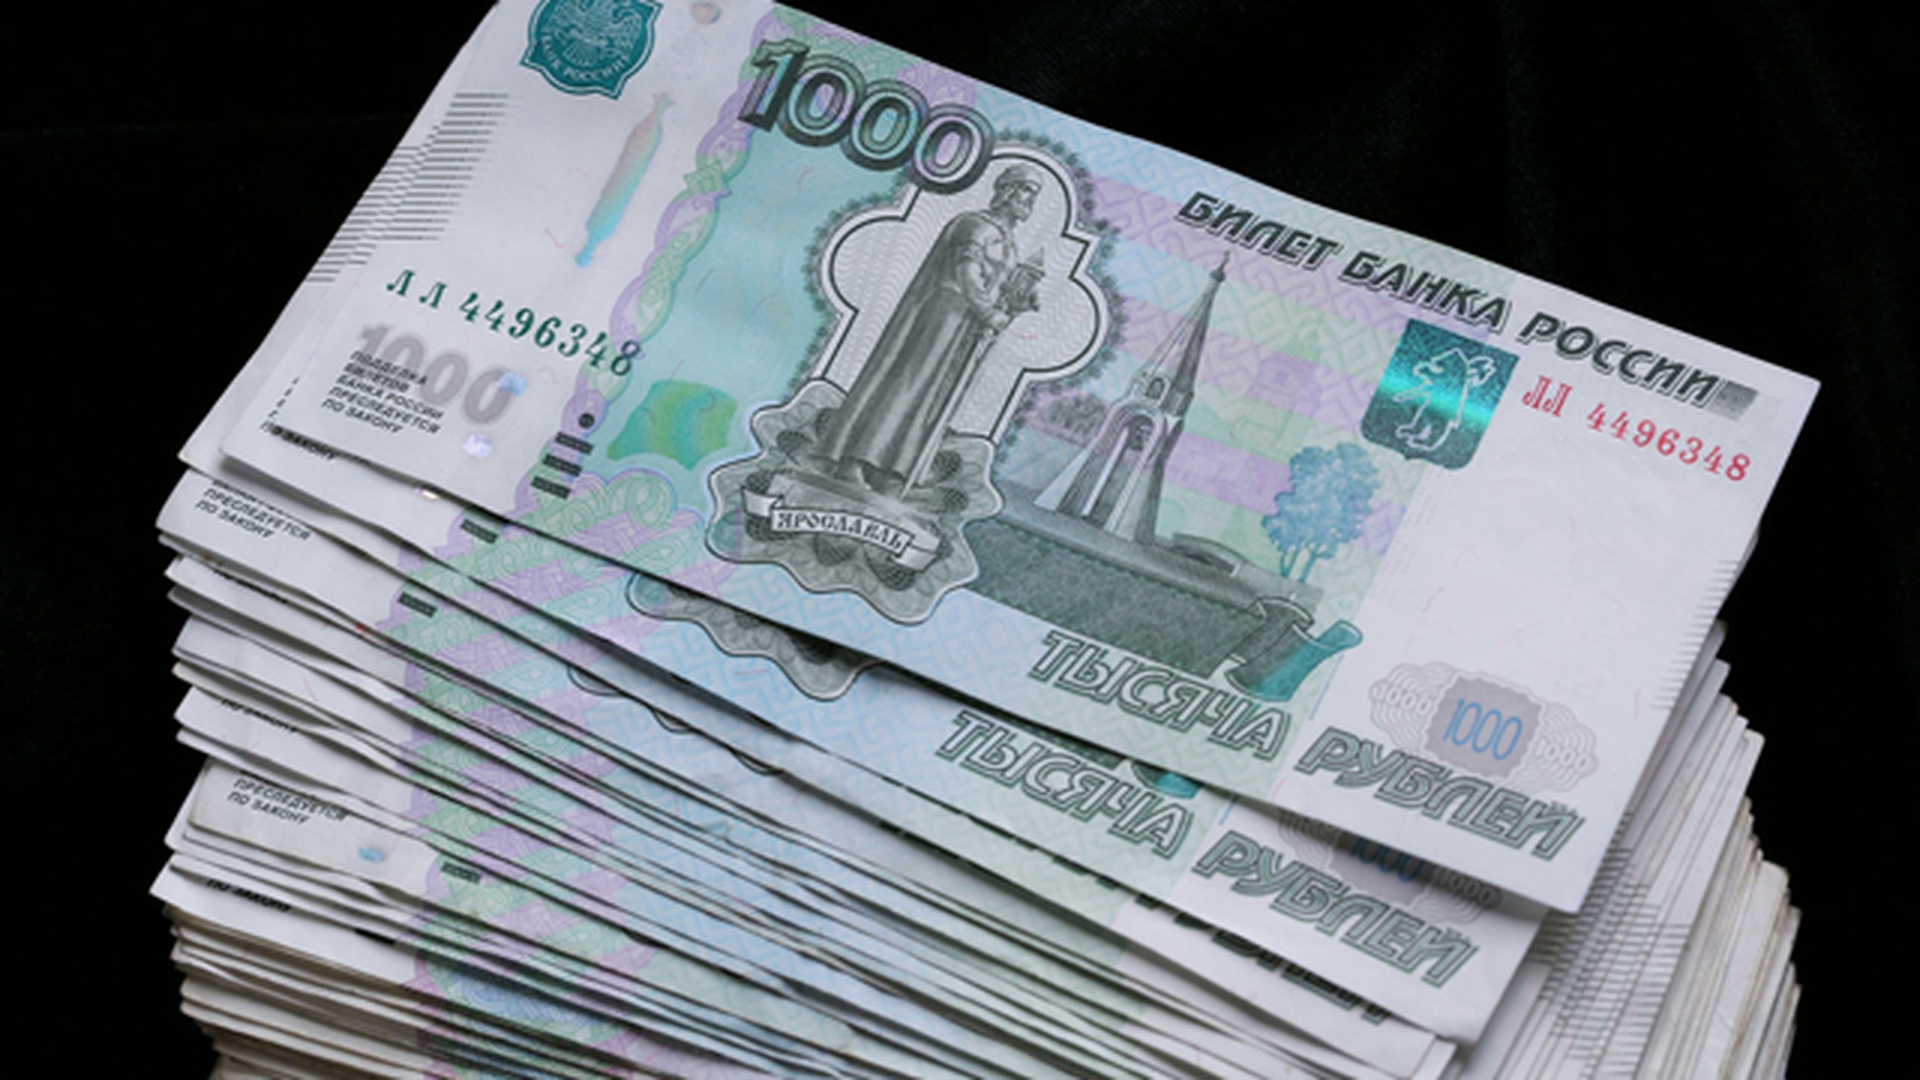 4000 Тысячи рублей